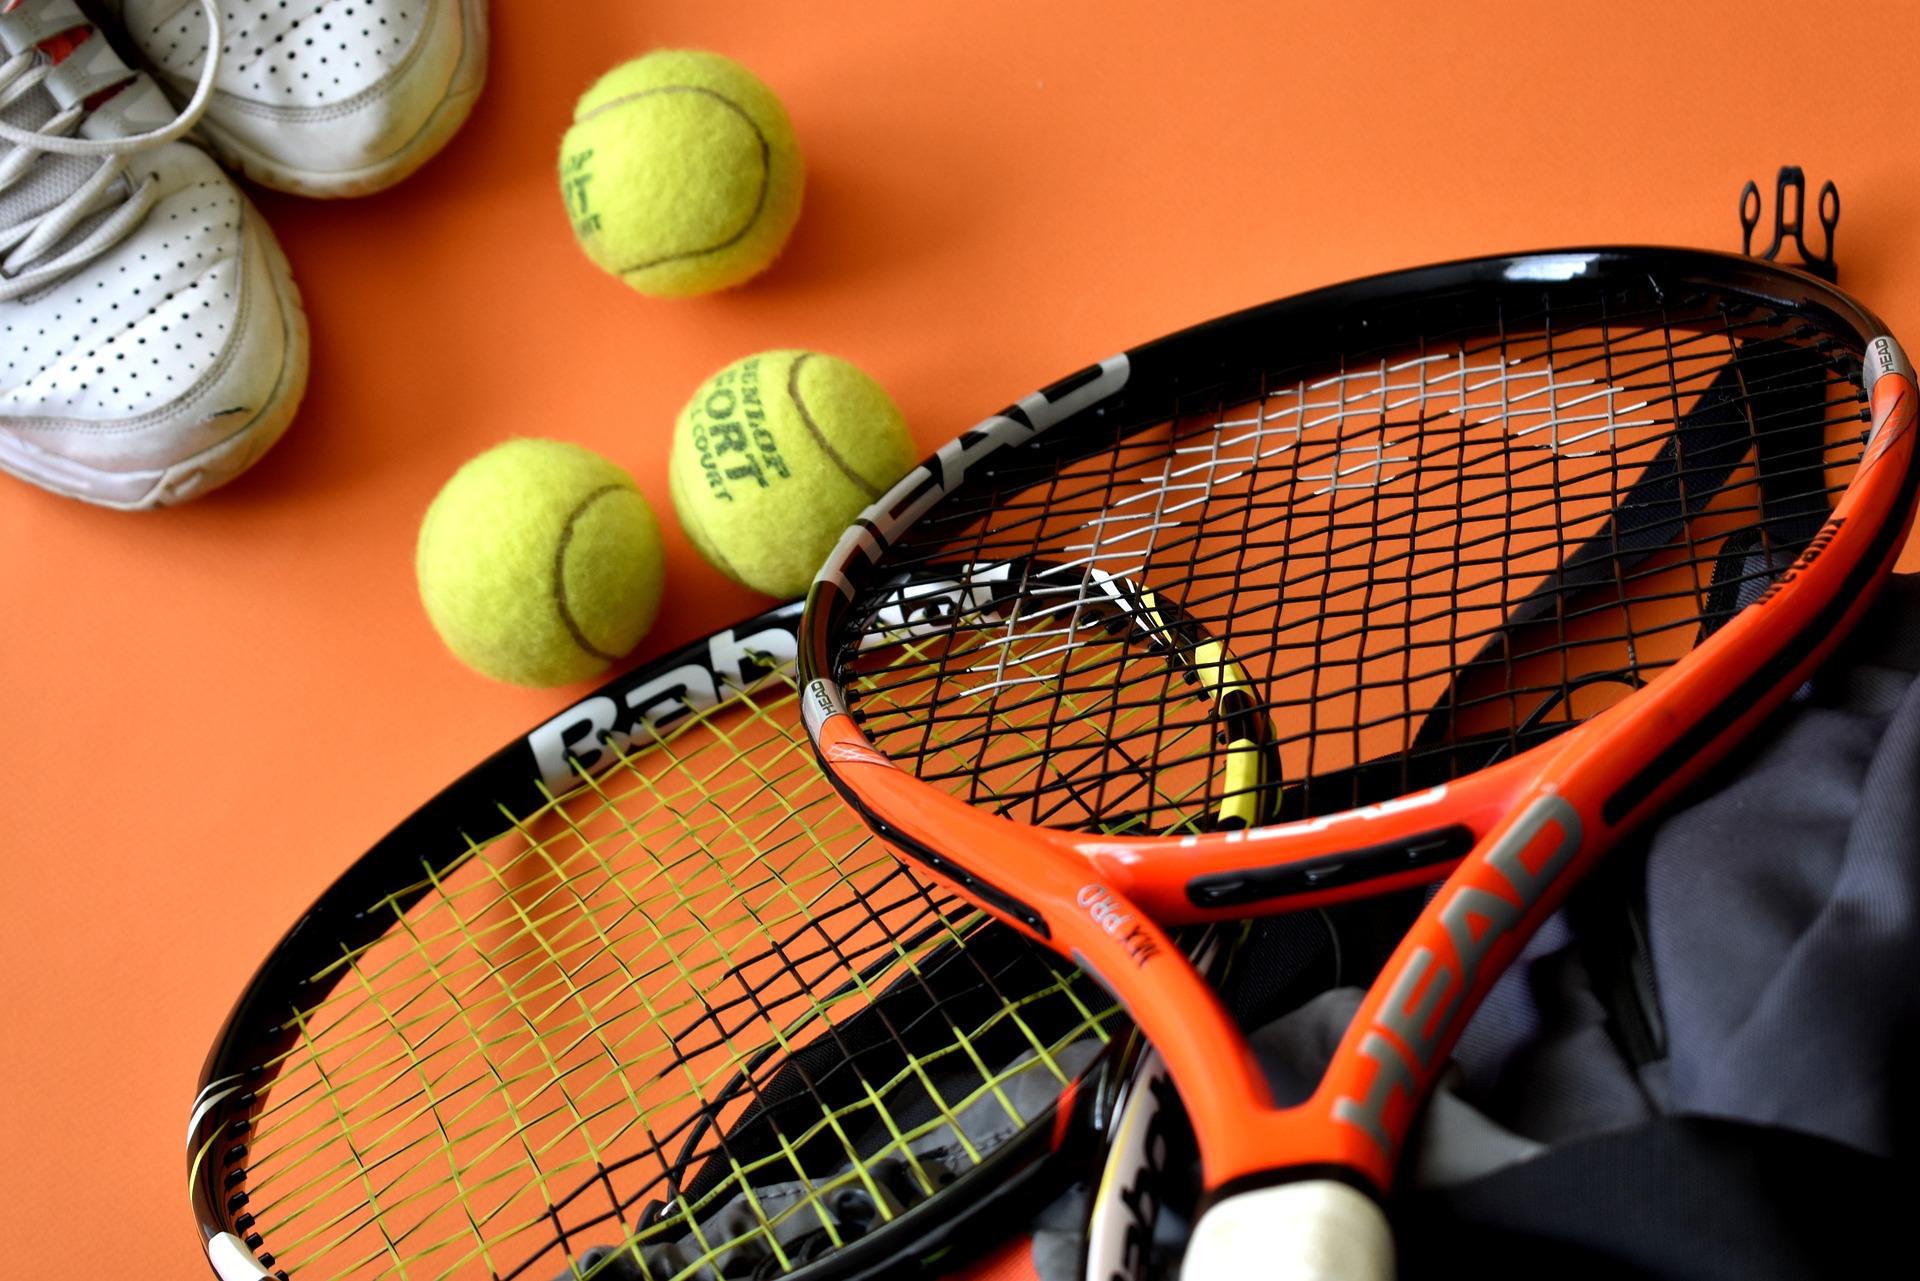 clases de tenis para niños y adultos